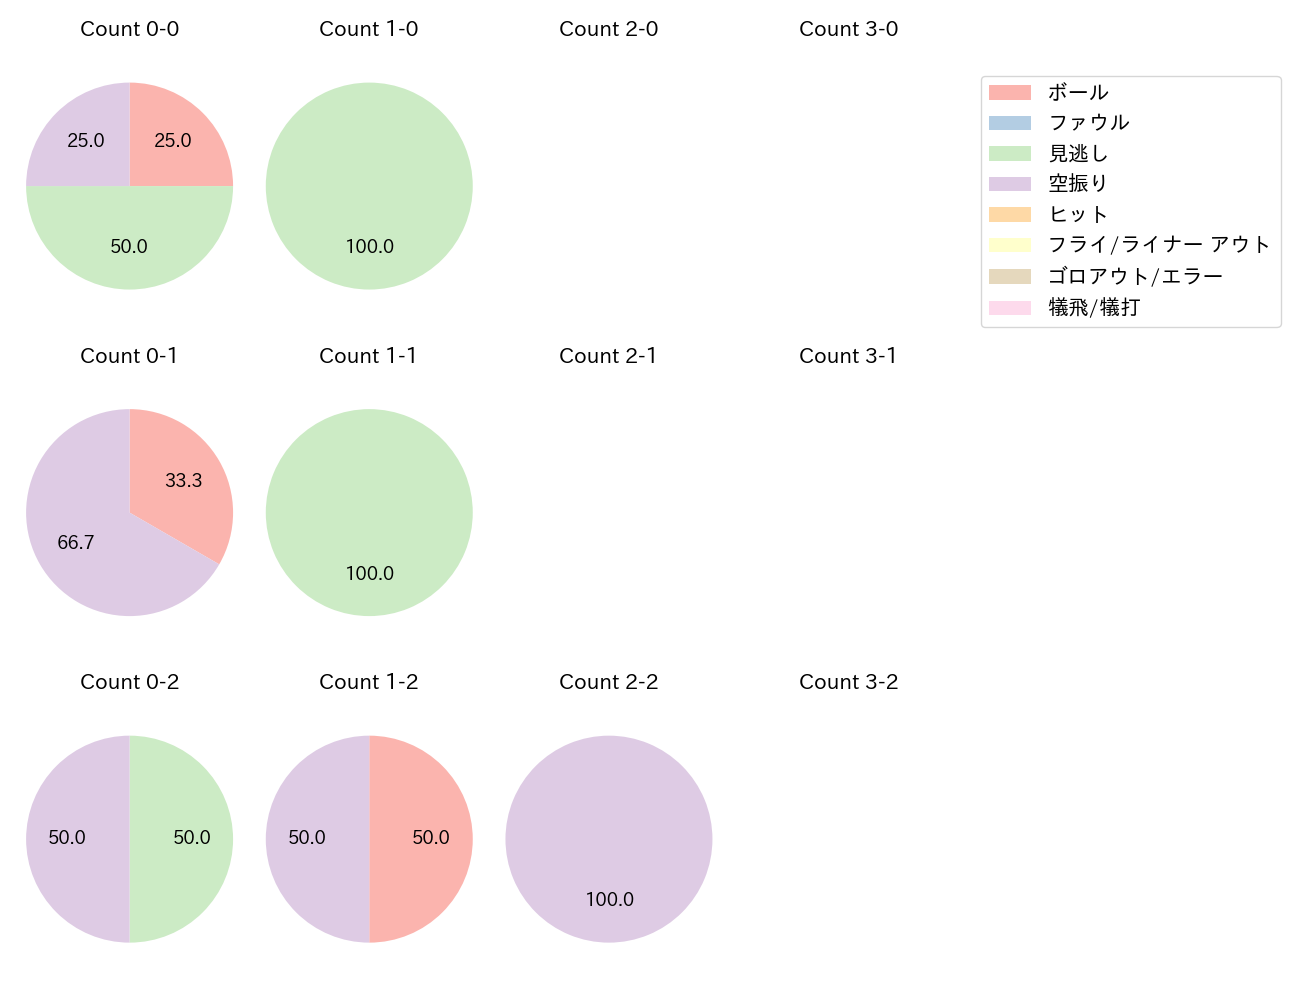 石川 歩の球数分布(2022年5月)